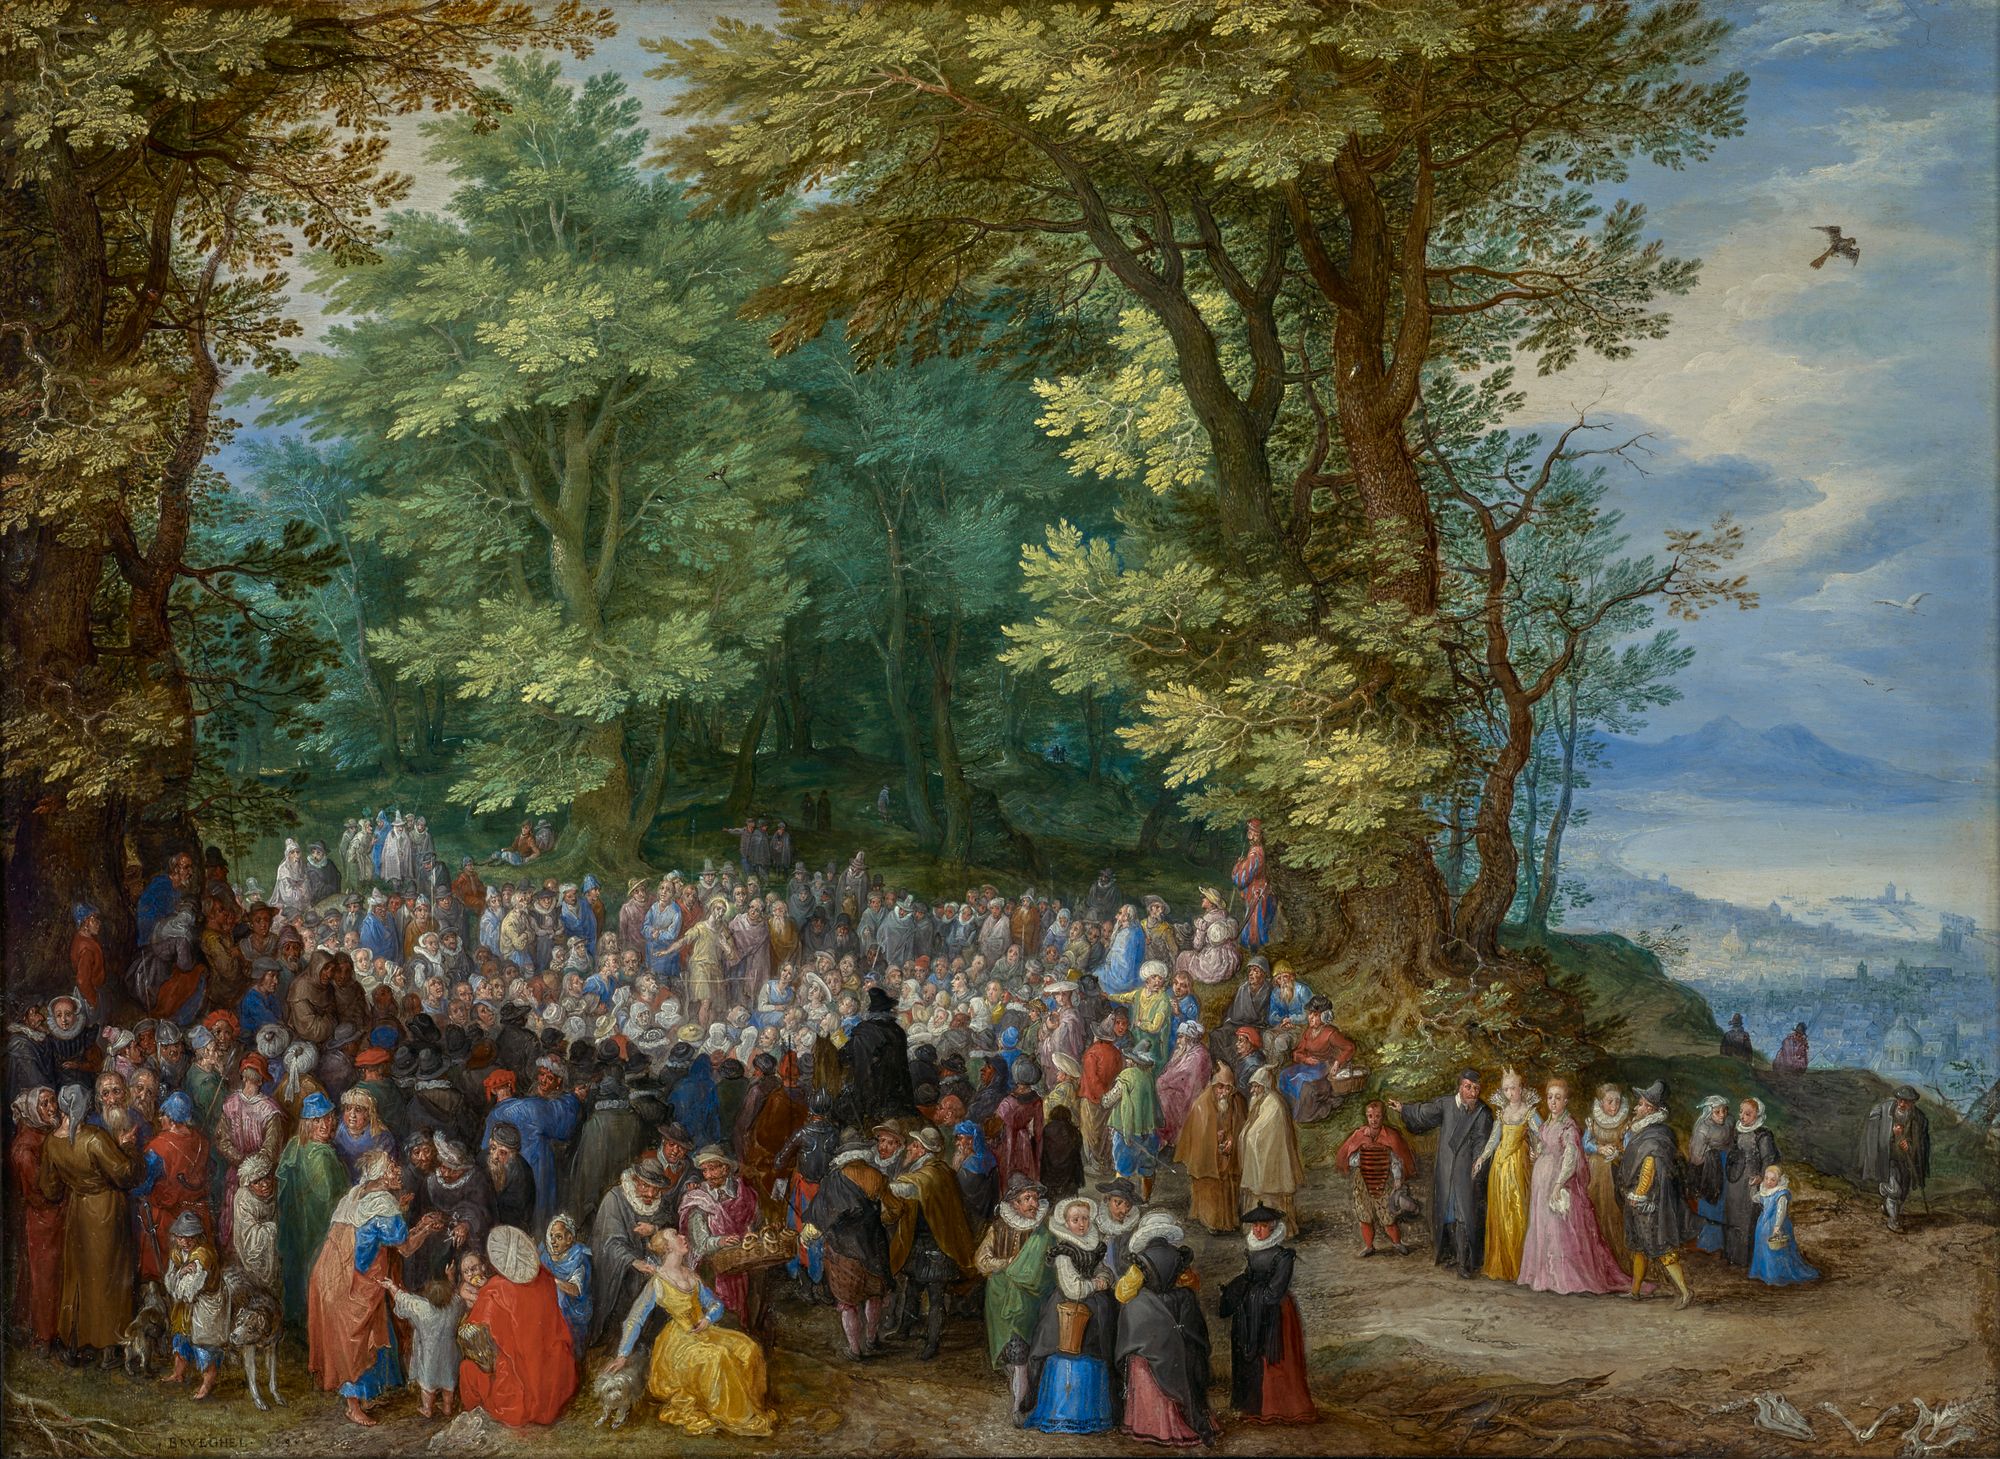 The Sermon on the Mount by Jan Brueghel the Elder (1598) - Public